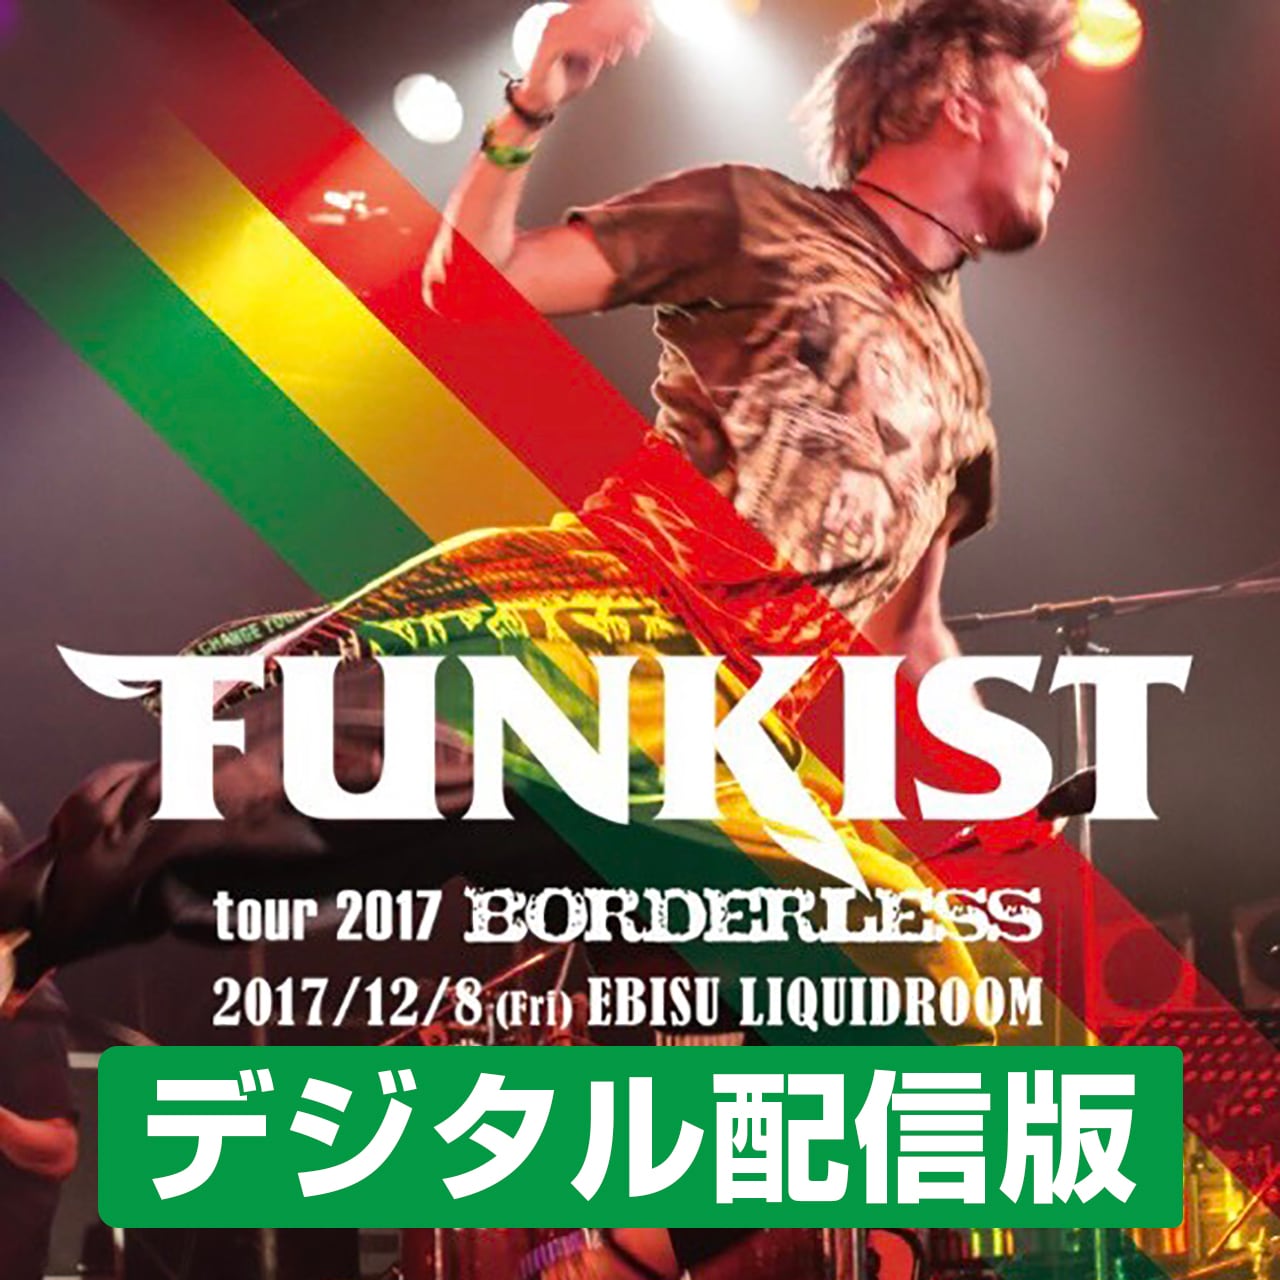 デジタル配信】FUNKIST tour 2017 『BORDERLESS』 TOUR FINAL EBISU